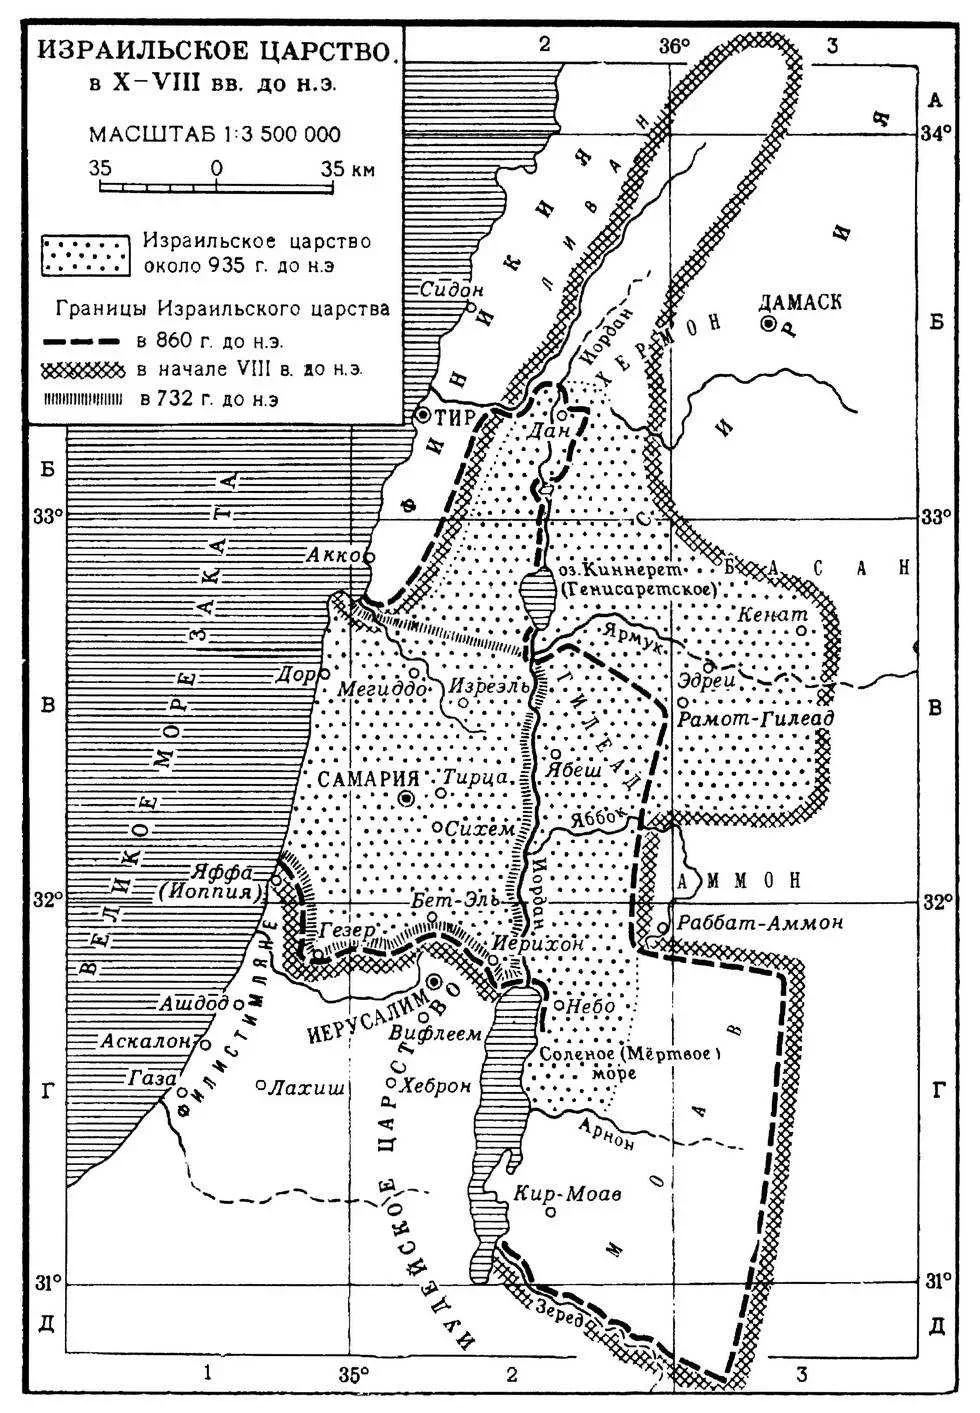 Израильское царство в древности (историческая область Палестина)